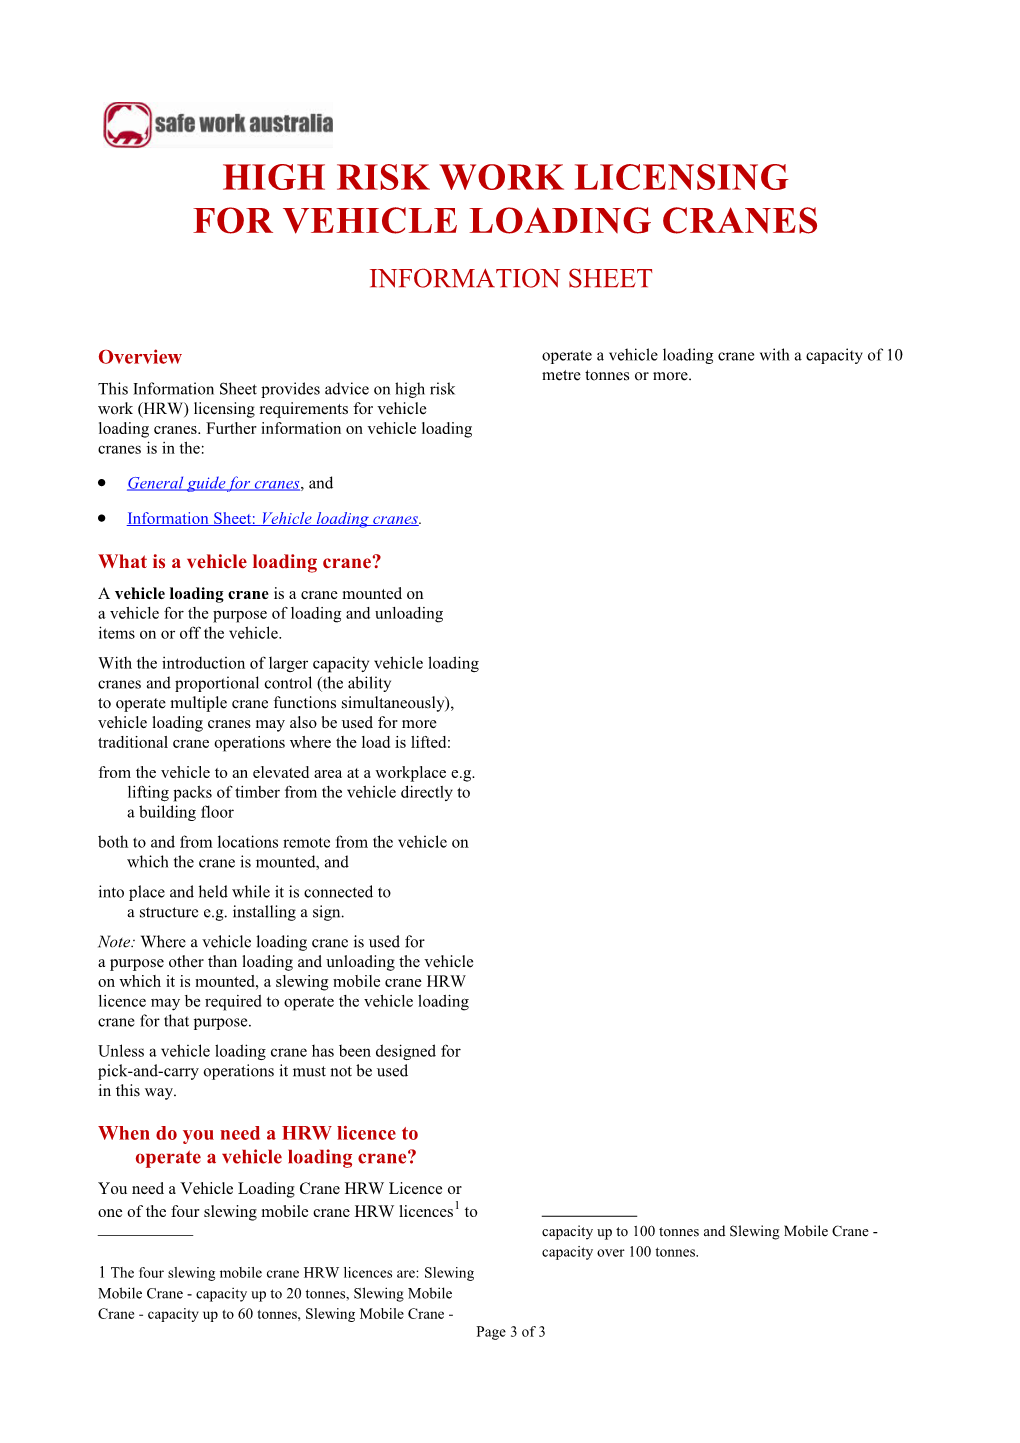 02. High Risk Work Licensing for Vehicle Loading Cranes Information Sheet